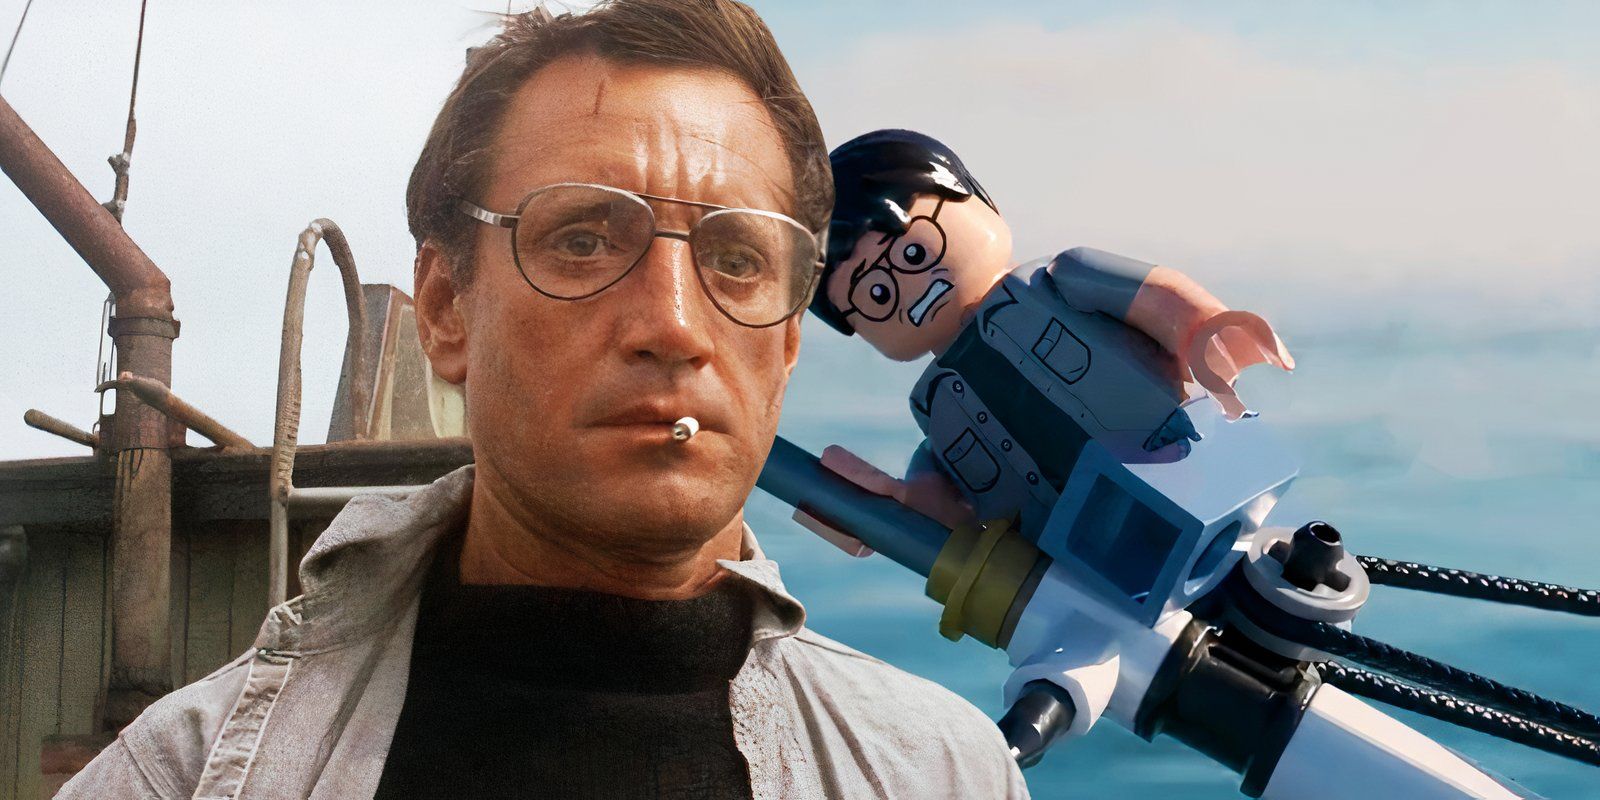 El vídeo de LEGO Tiburón resume a la perfección el exitoso thriller de Steven Spielberg en solo 1,5 minutos